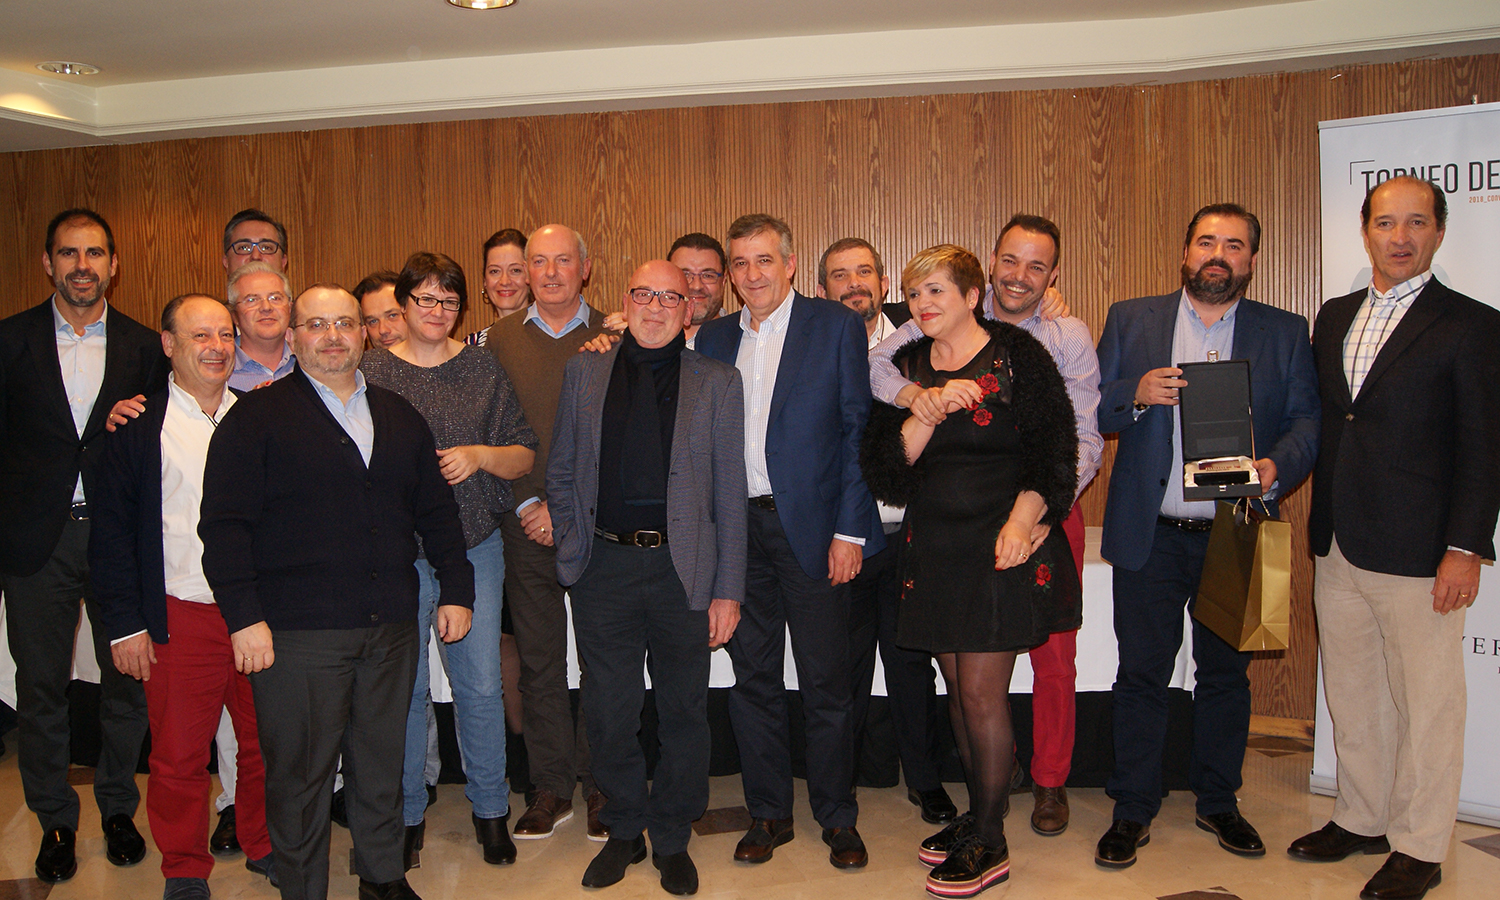 El equipo comercial de la Delegación de Baleares recogiendo el 1er Premio a Mejor Delegación durante la Convención 2018 de Conversia